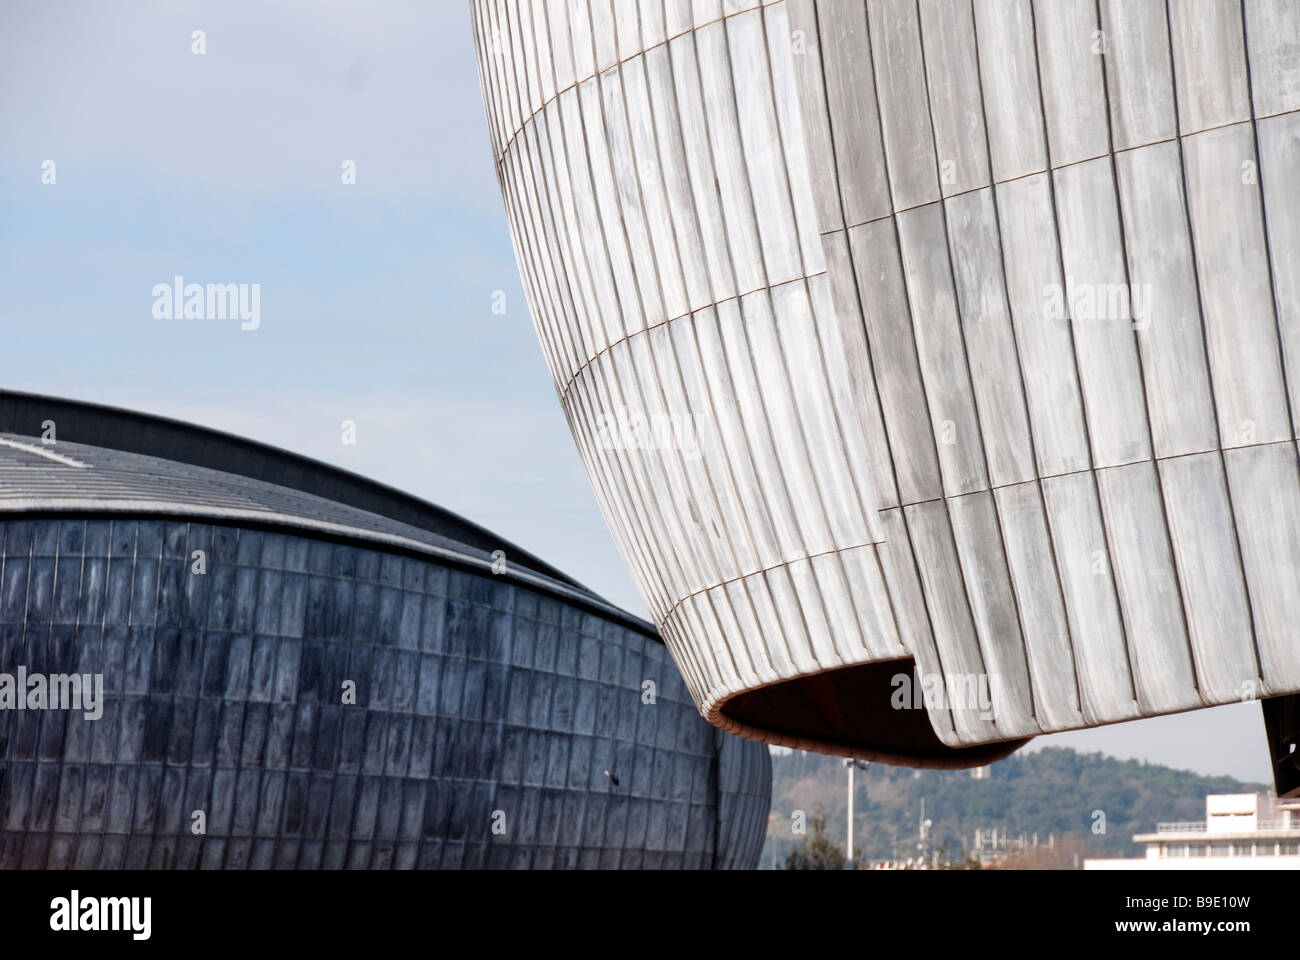 Détail de la toiture de plomb de l'auditorium, salle de concert dans le parc de la musique conçue par l'architecte Renzo Piano Banque D'Images